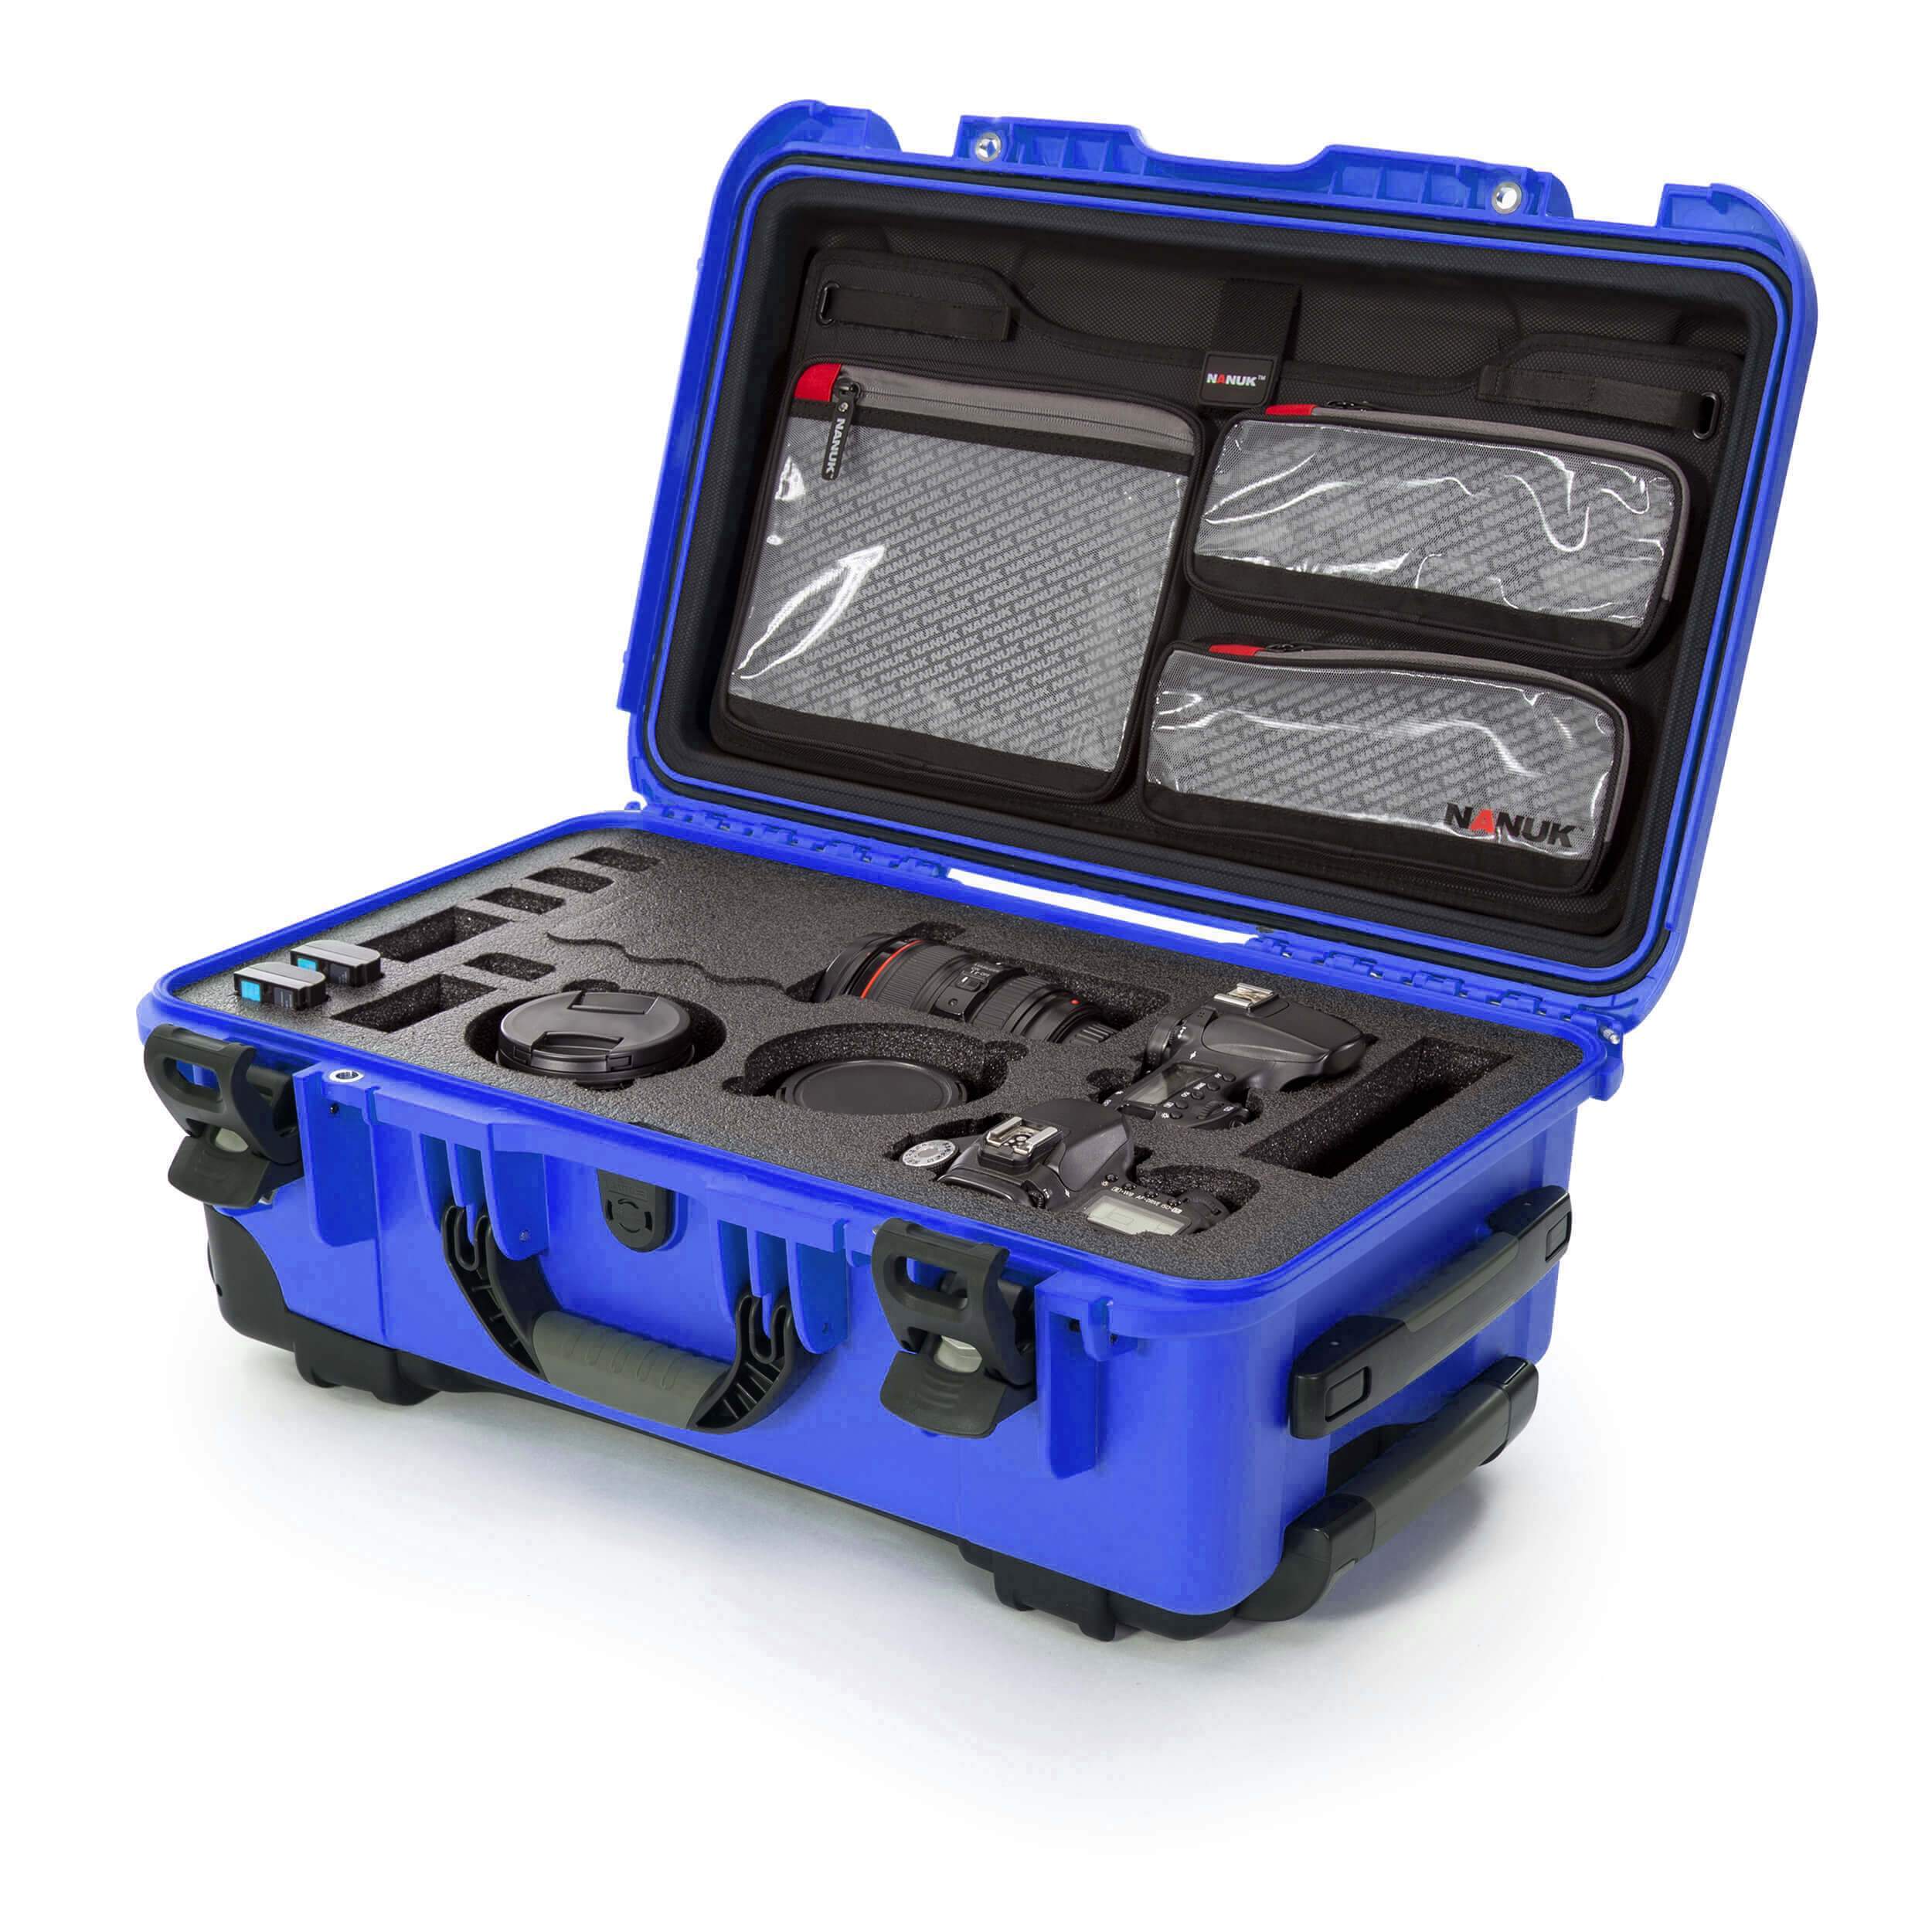 NANUK 935 DSLR Camera Case-Camera Case-Blue-Lid Organizer-NANUK